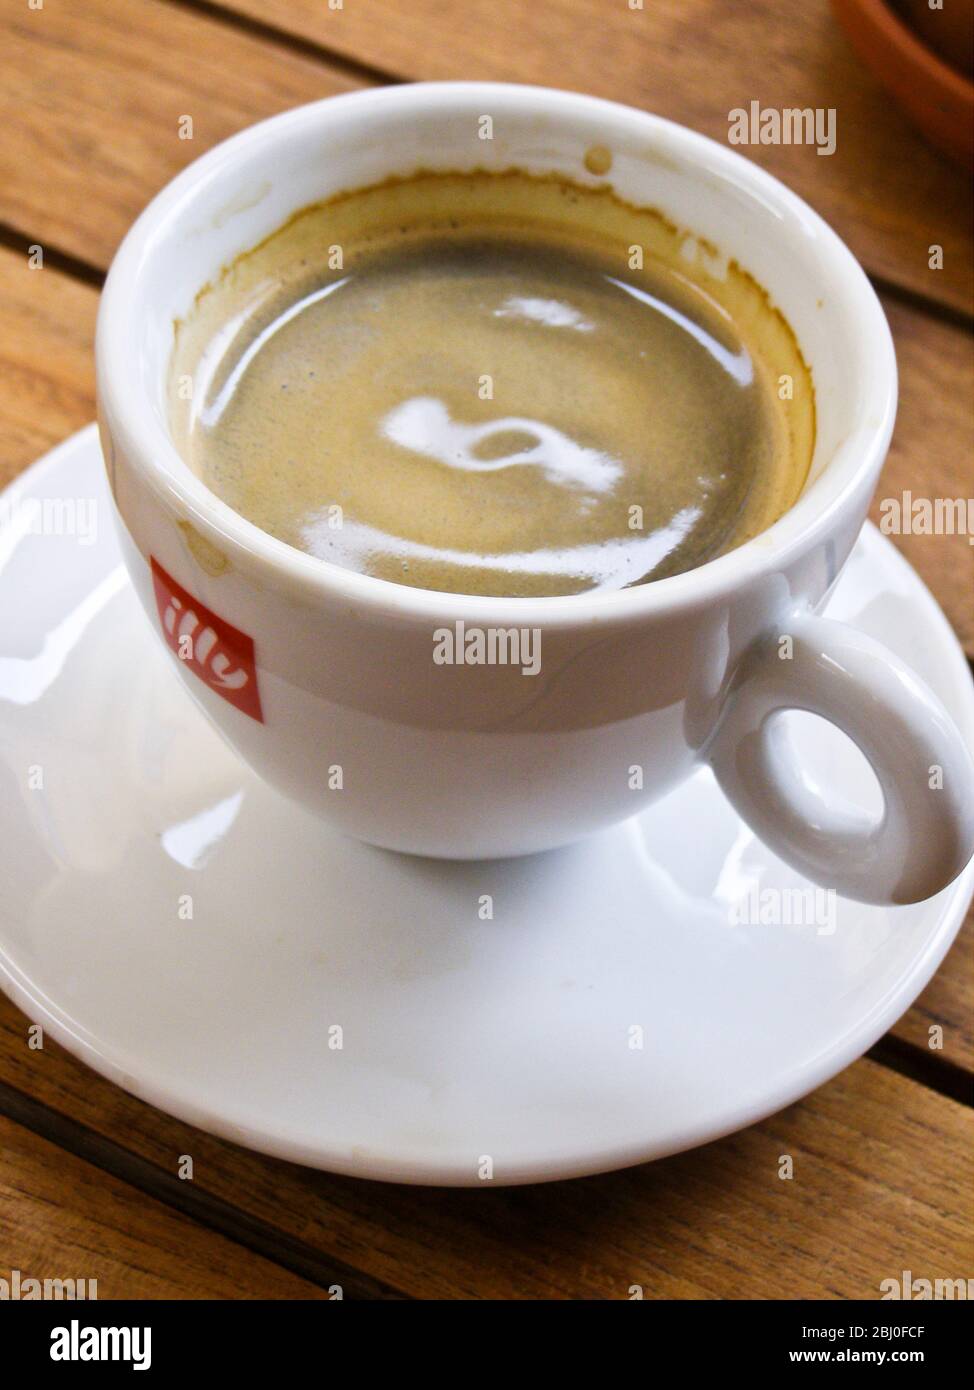 Una pequeña taza de café espresso en el café sueco. - Foto de stock